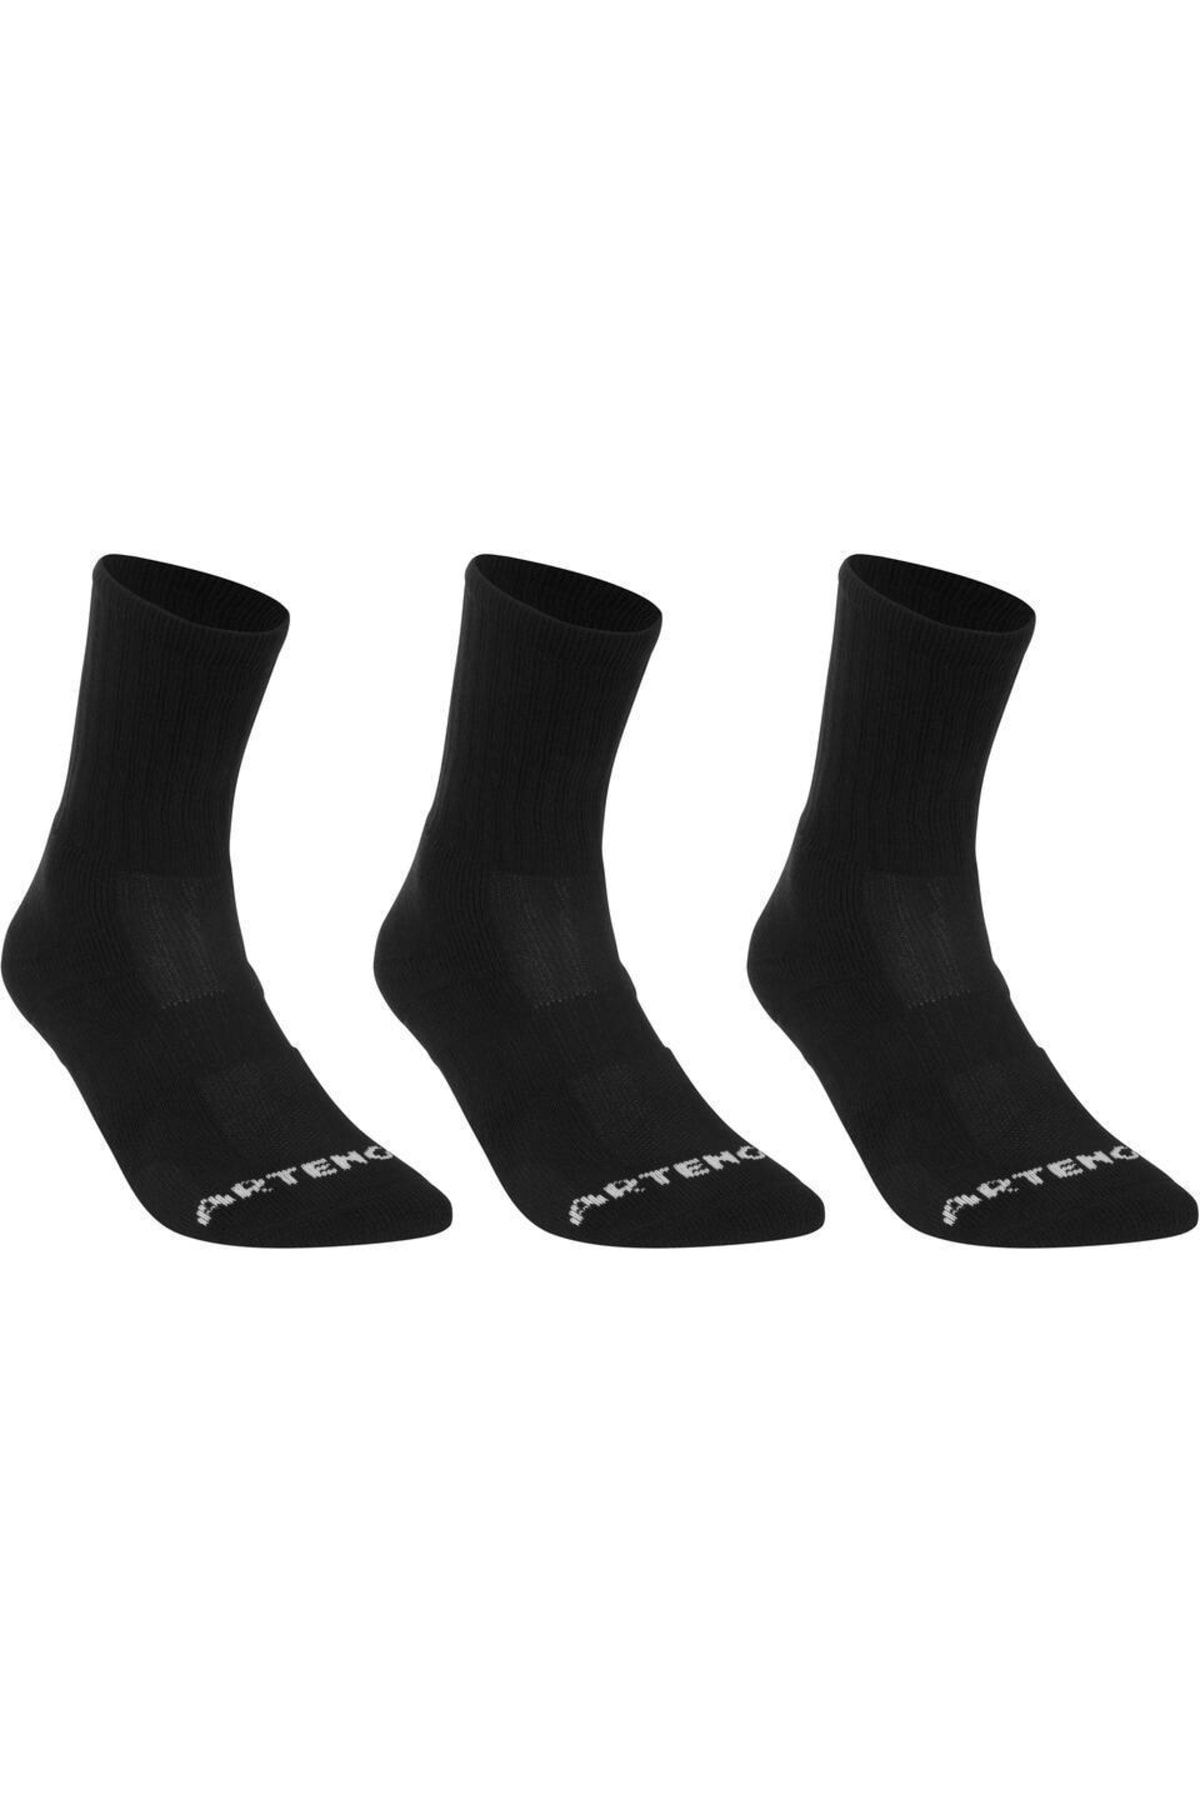 Telvesse Spor Çorap 35-38 Uzun Konçlu Kışlık Çorap Havlu Yapılı Siyah 3 Çift